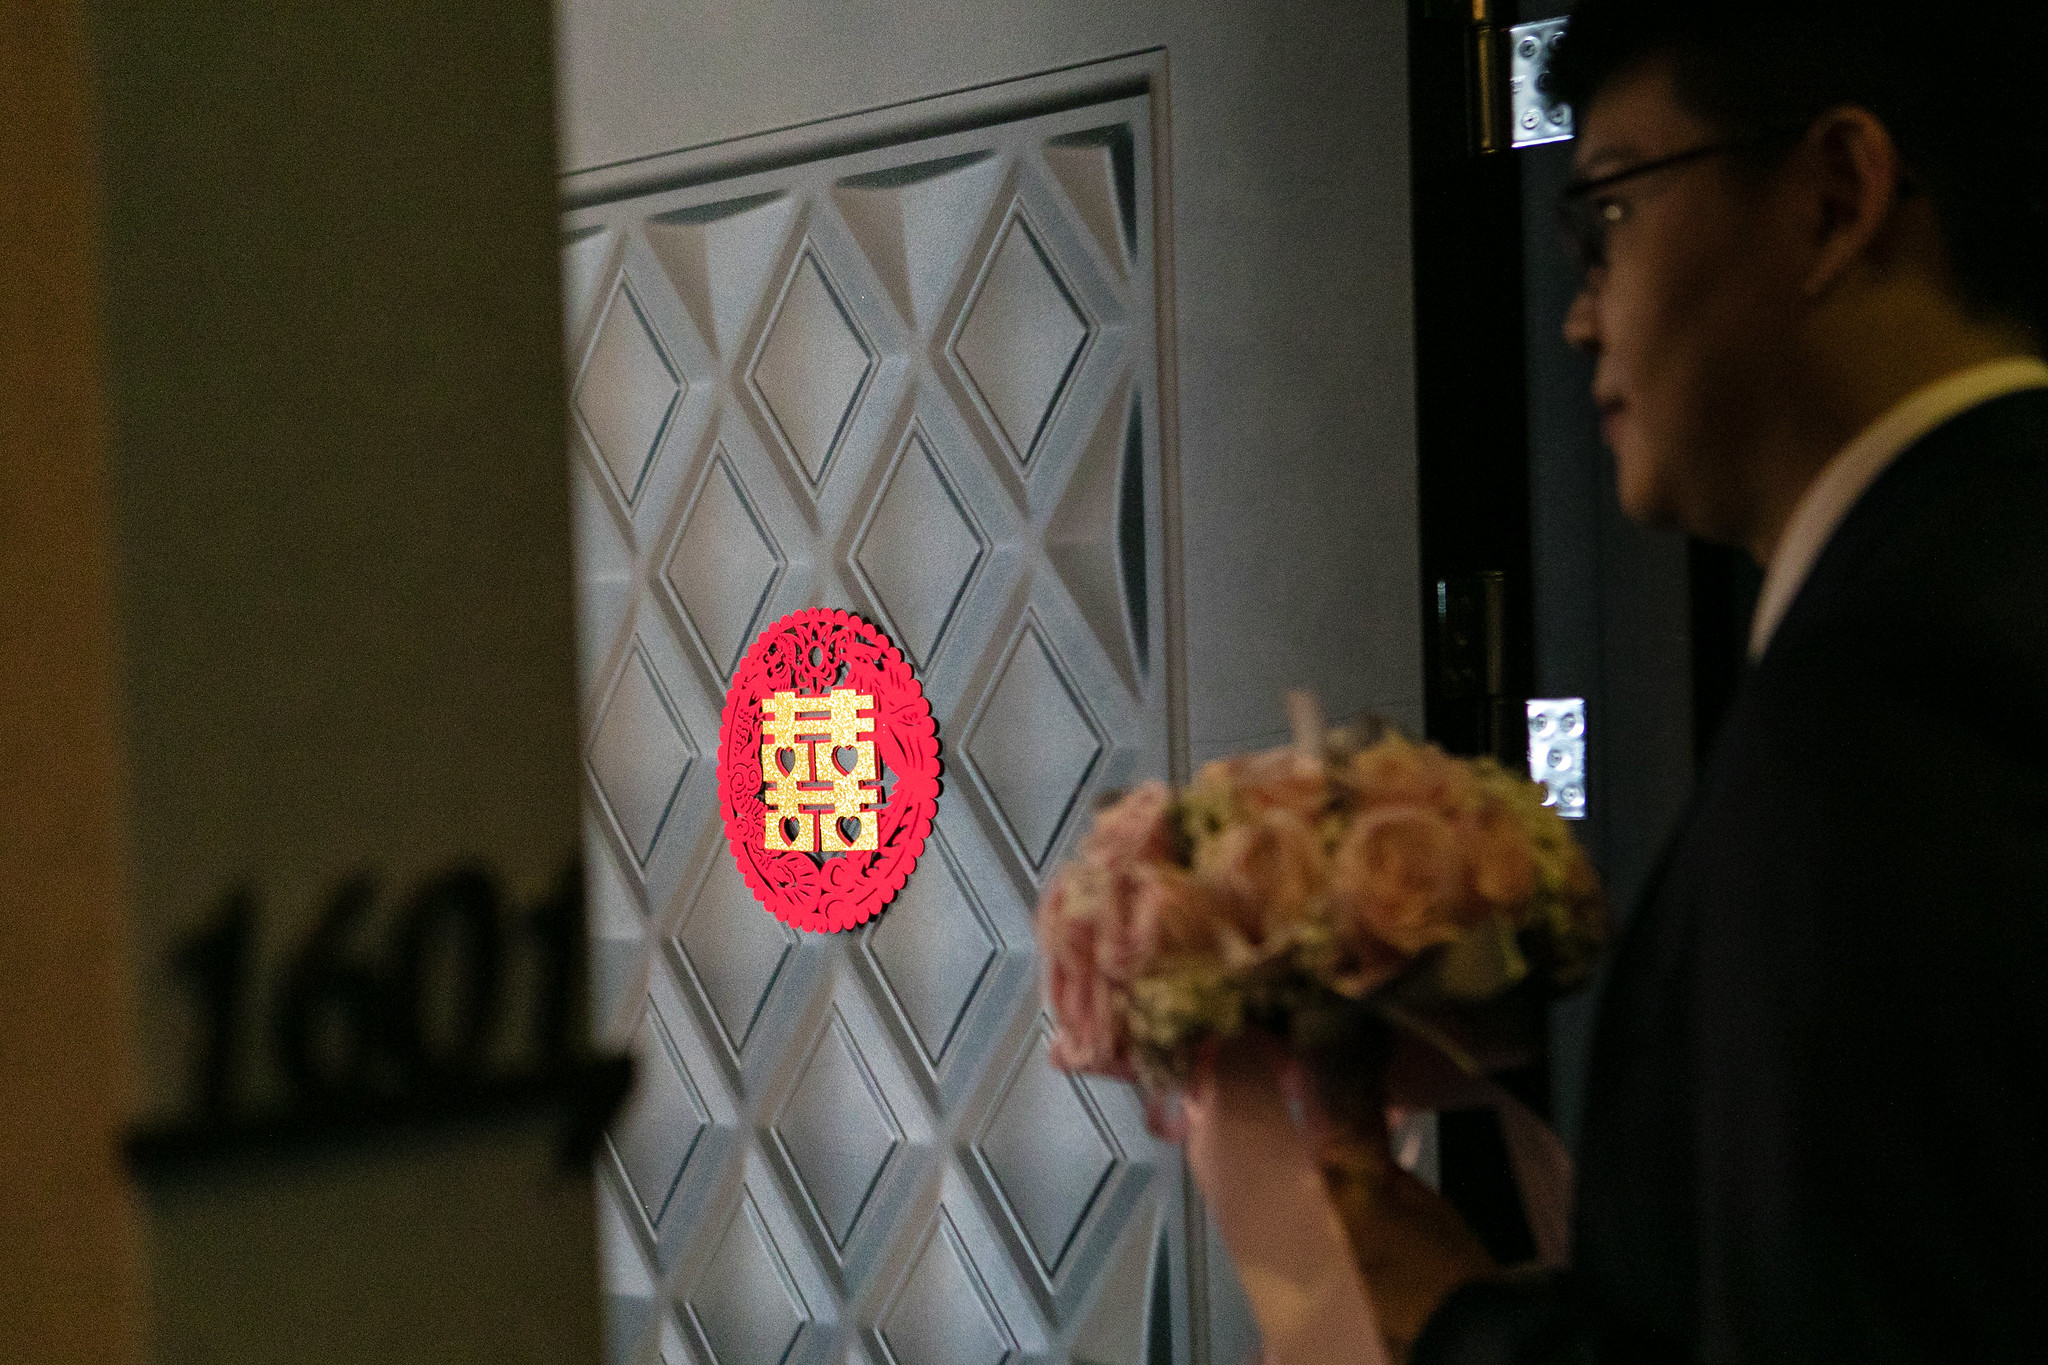 [婚攝] 沛羽 & 雅婷  寒軒國際大飯店庭園廳 | 訂結午宴搶先看 | 婚禮紀錄